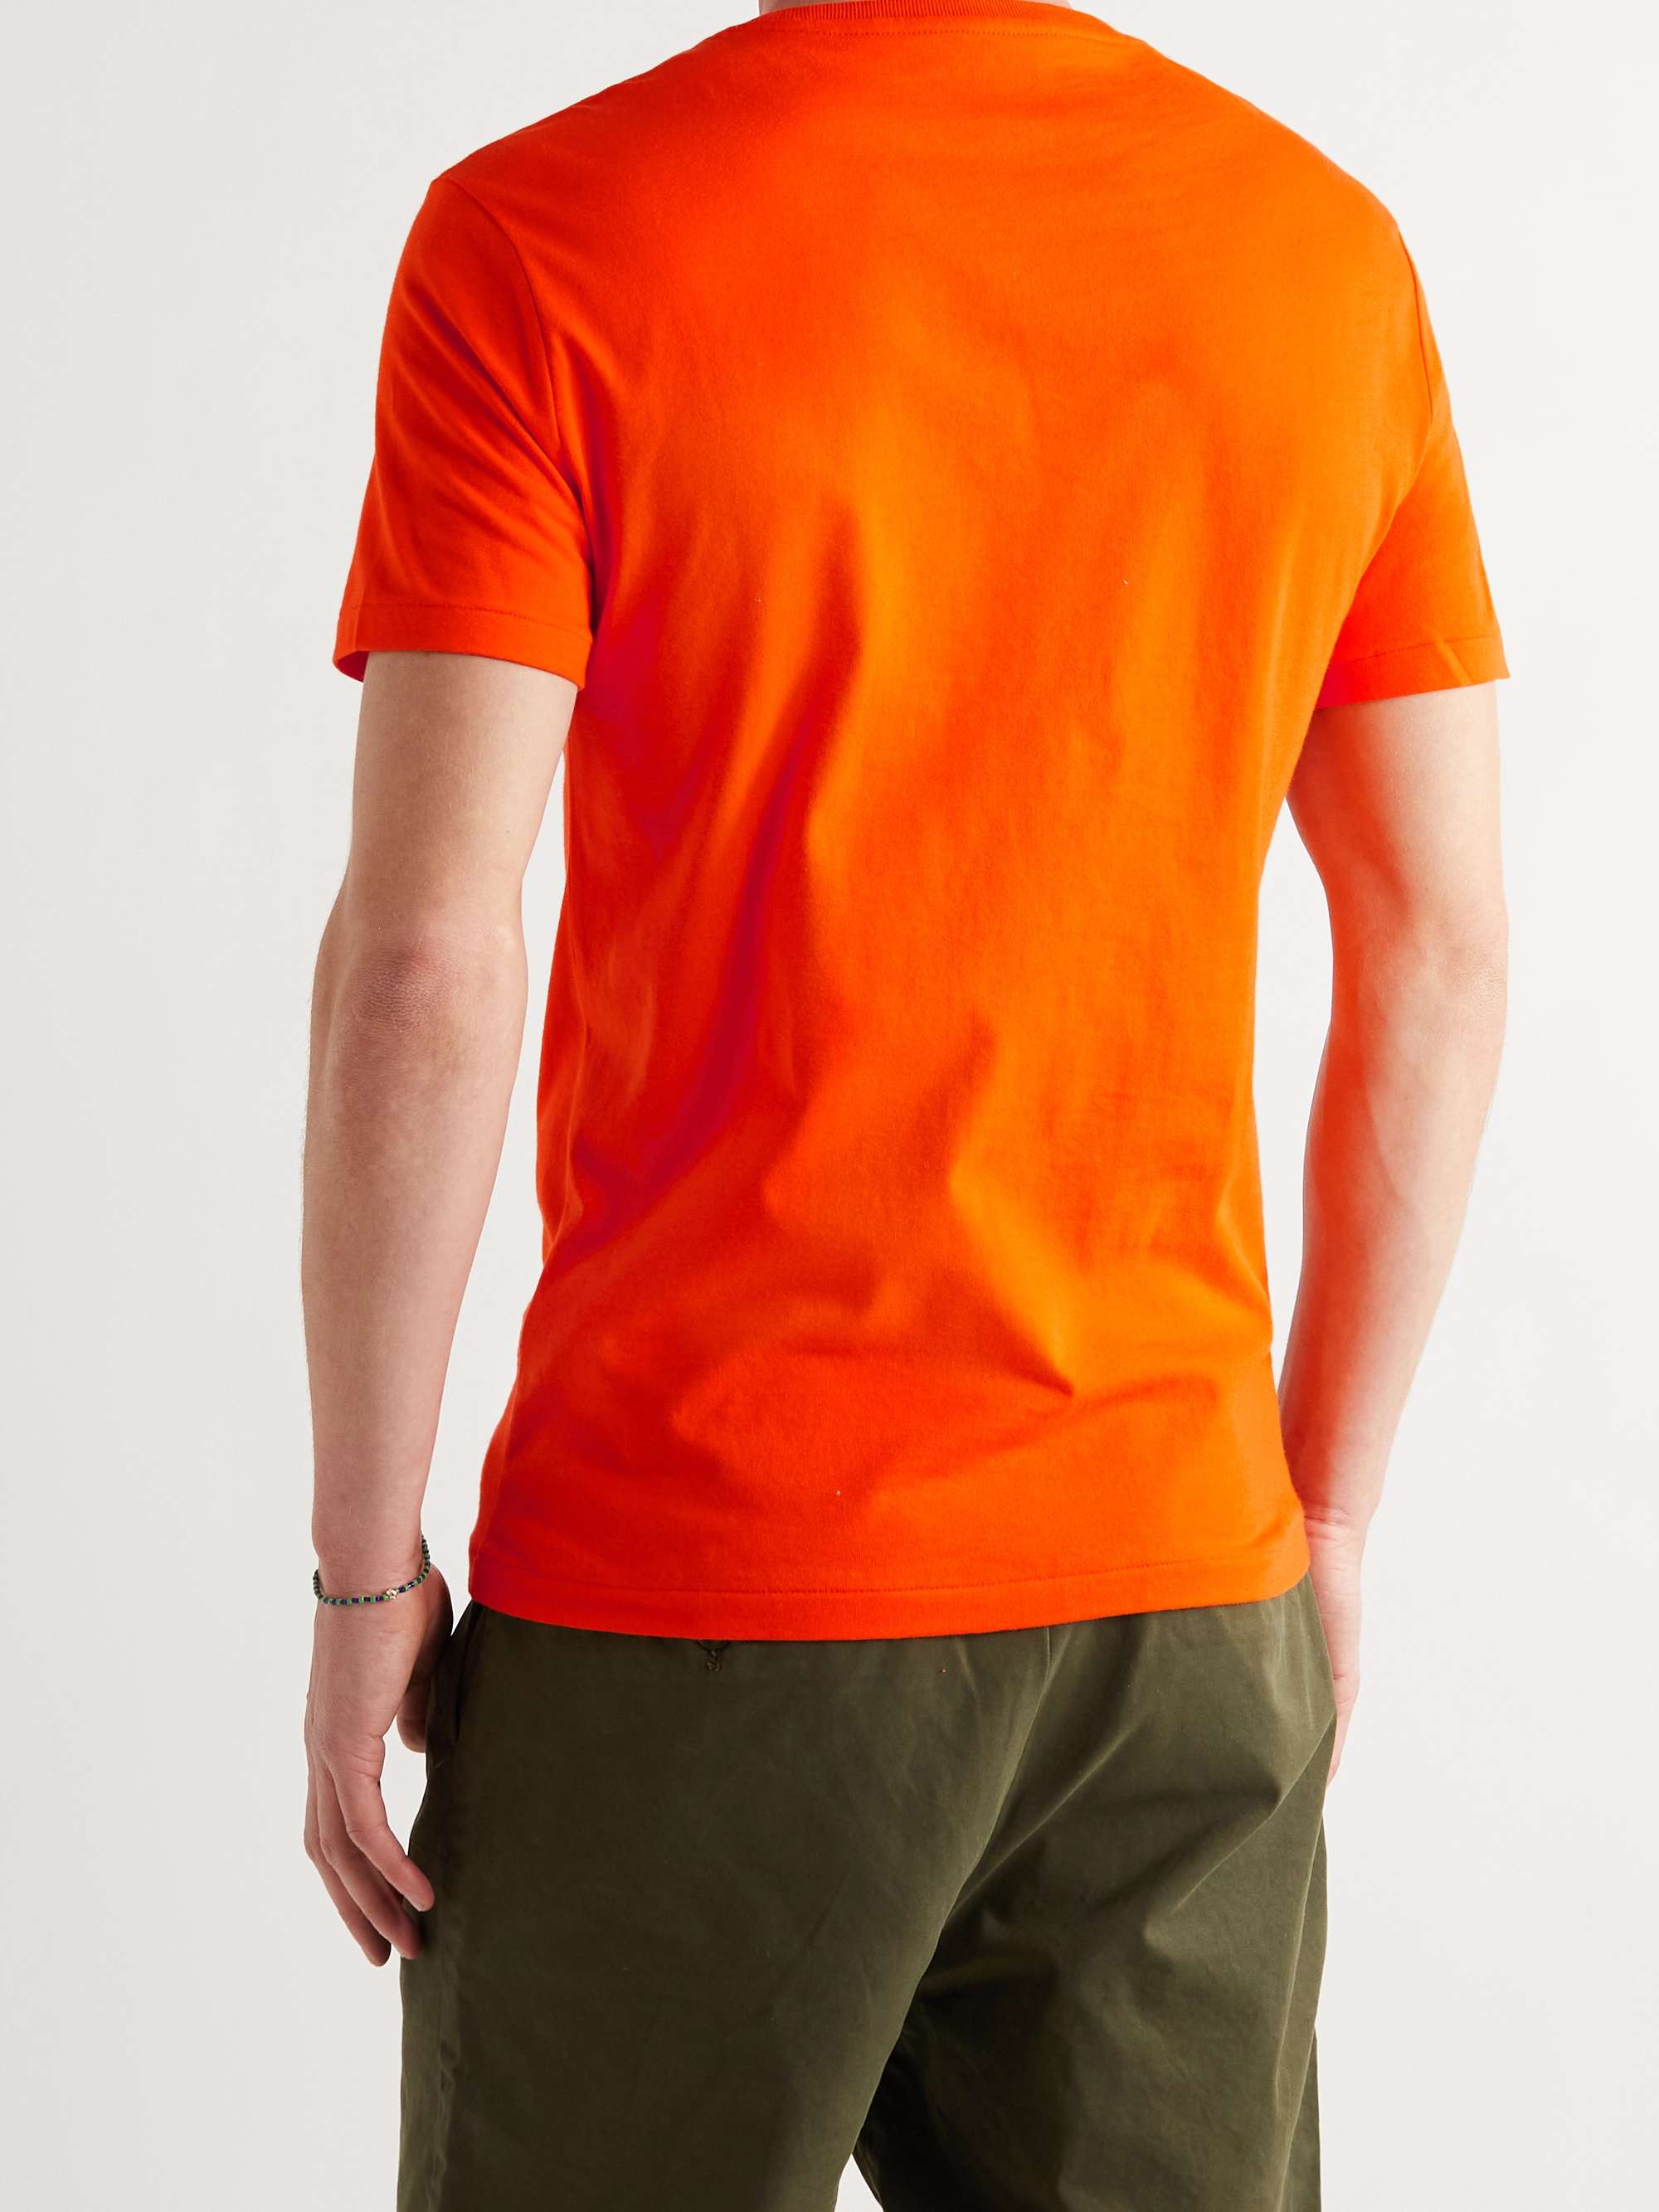 POLO RALPH LAUREN Slim-Fit Mélange Cotton-Jersey T-Shirt